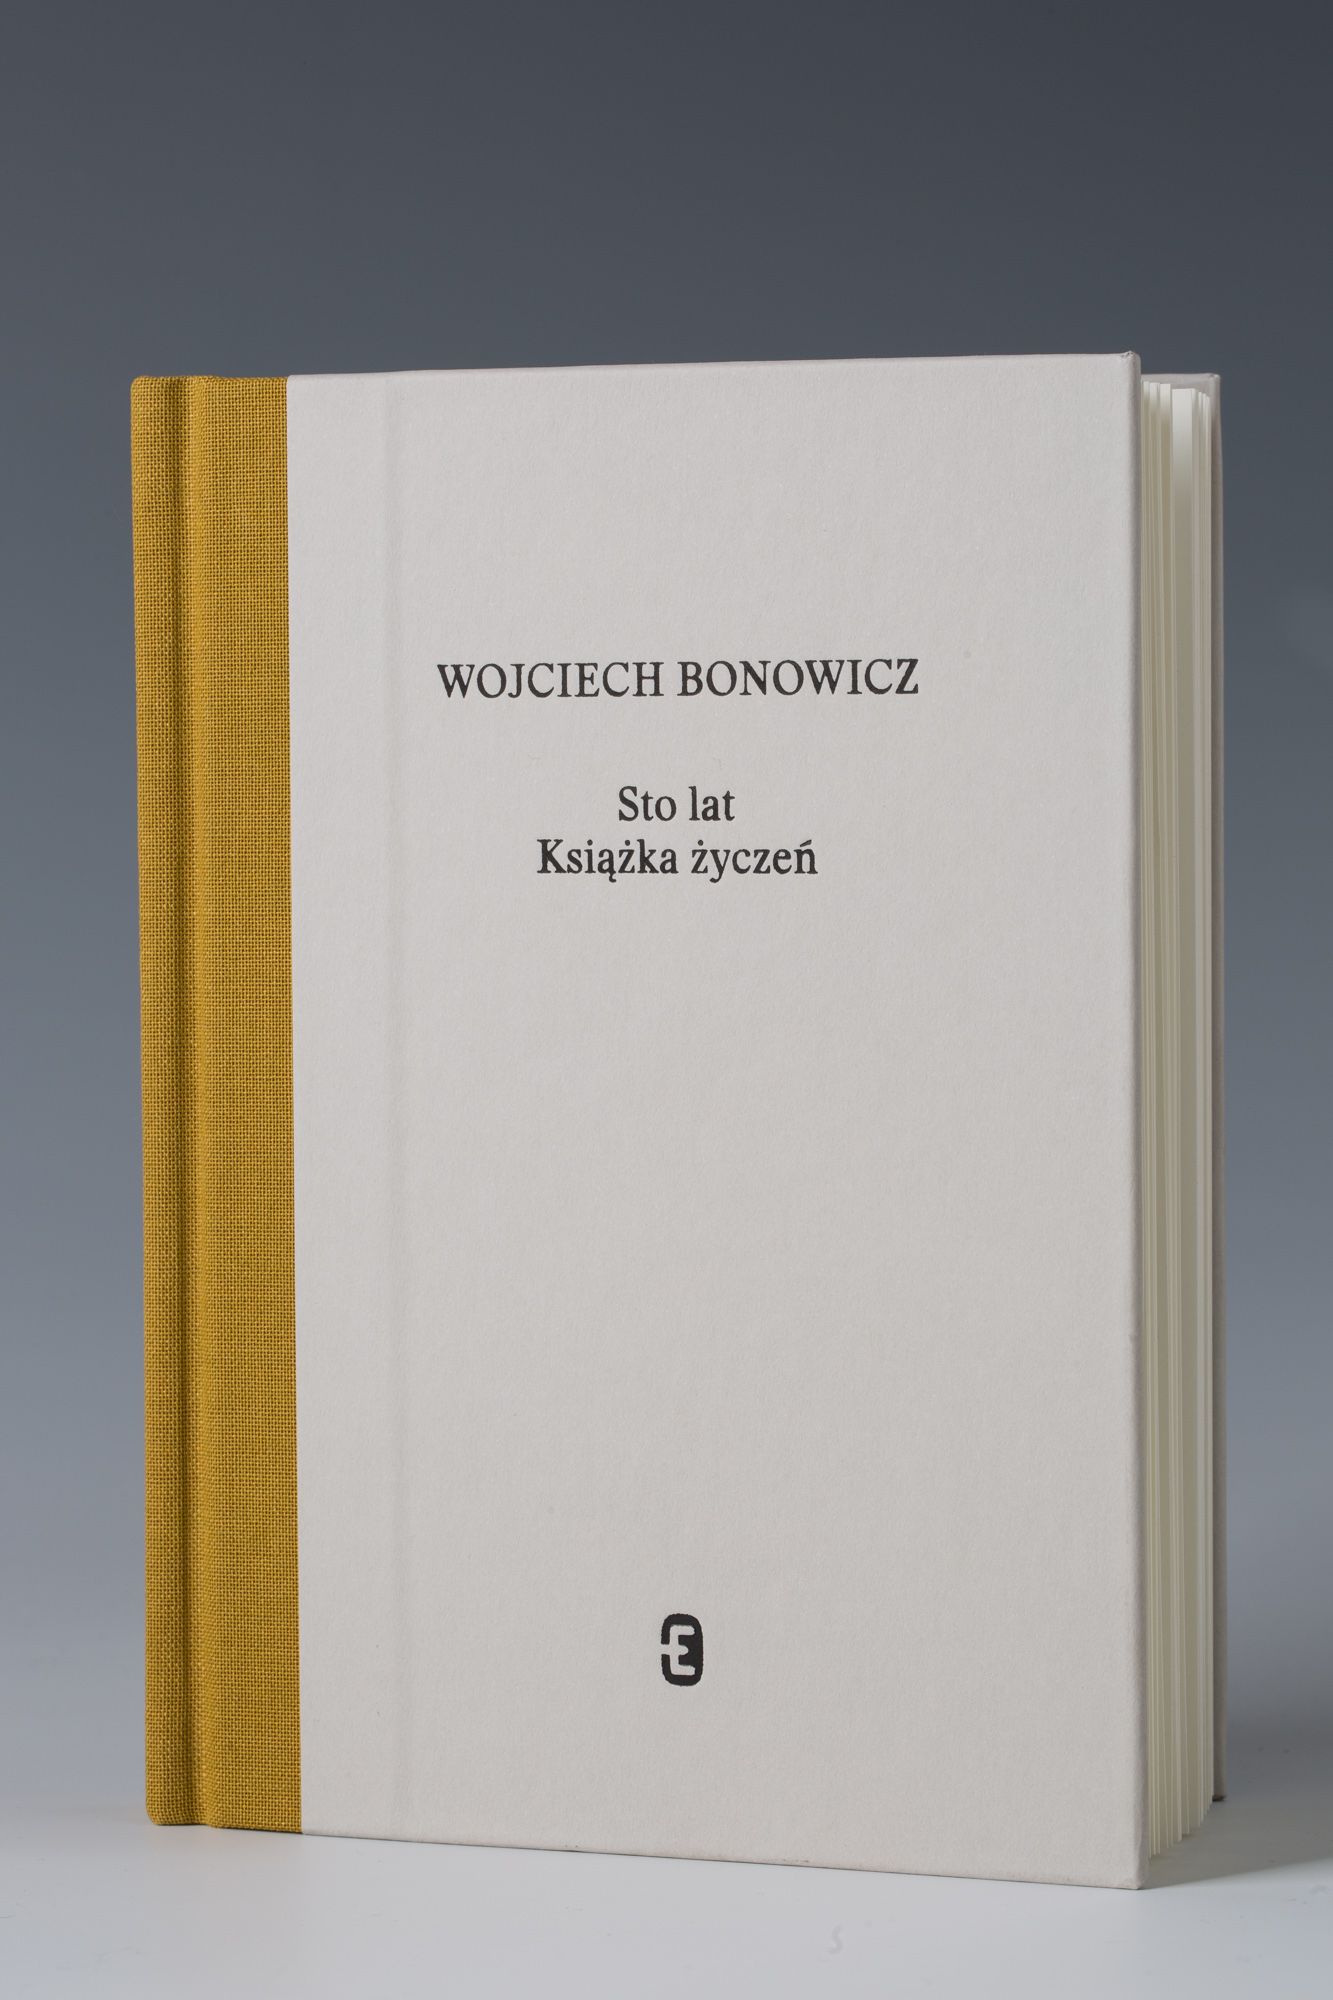 „Sto lat. Książka życzeń", Wojciech Bonowicz